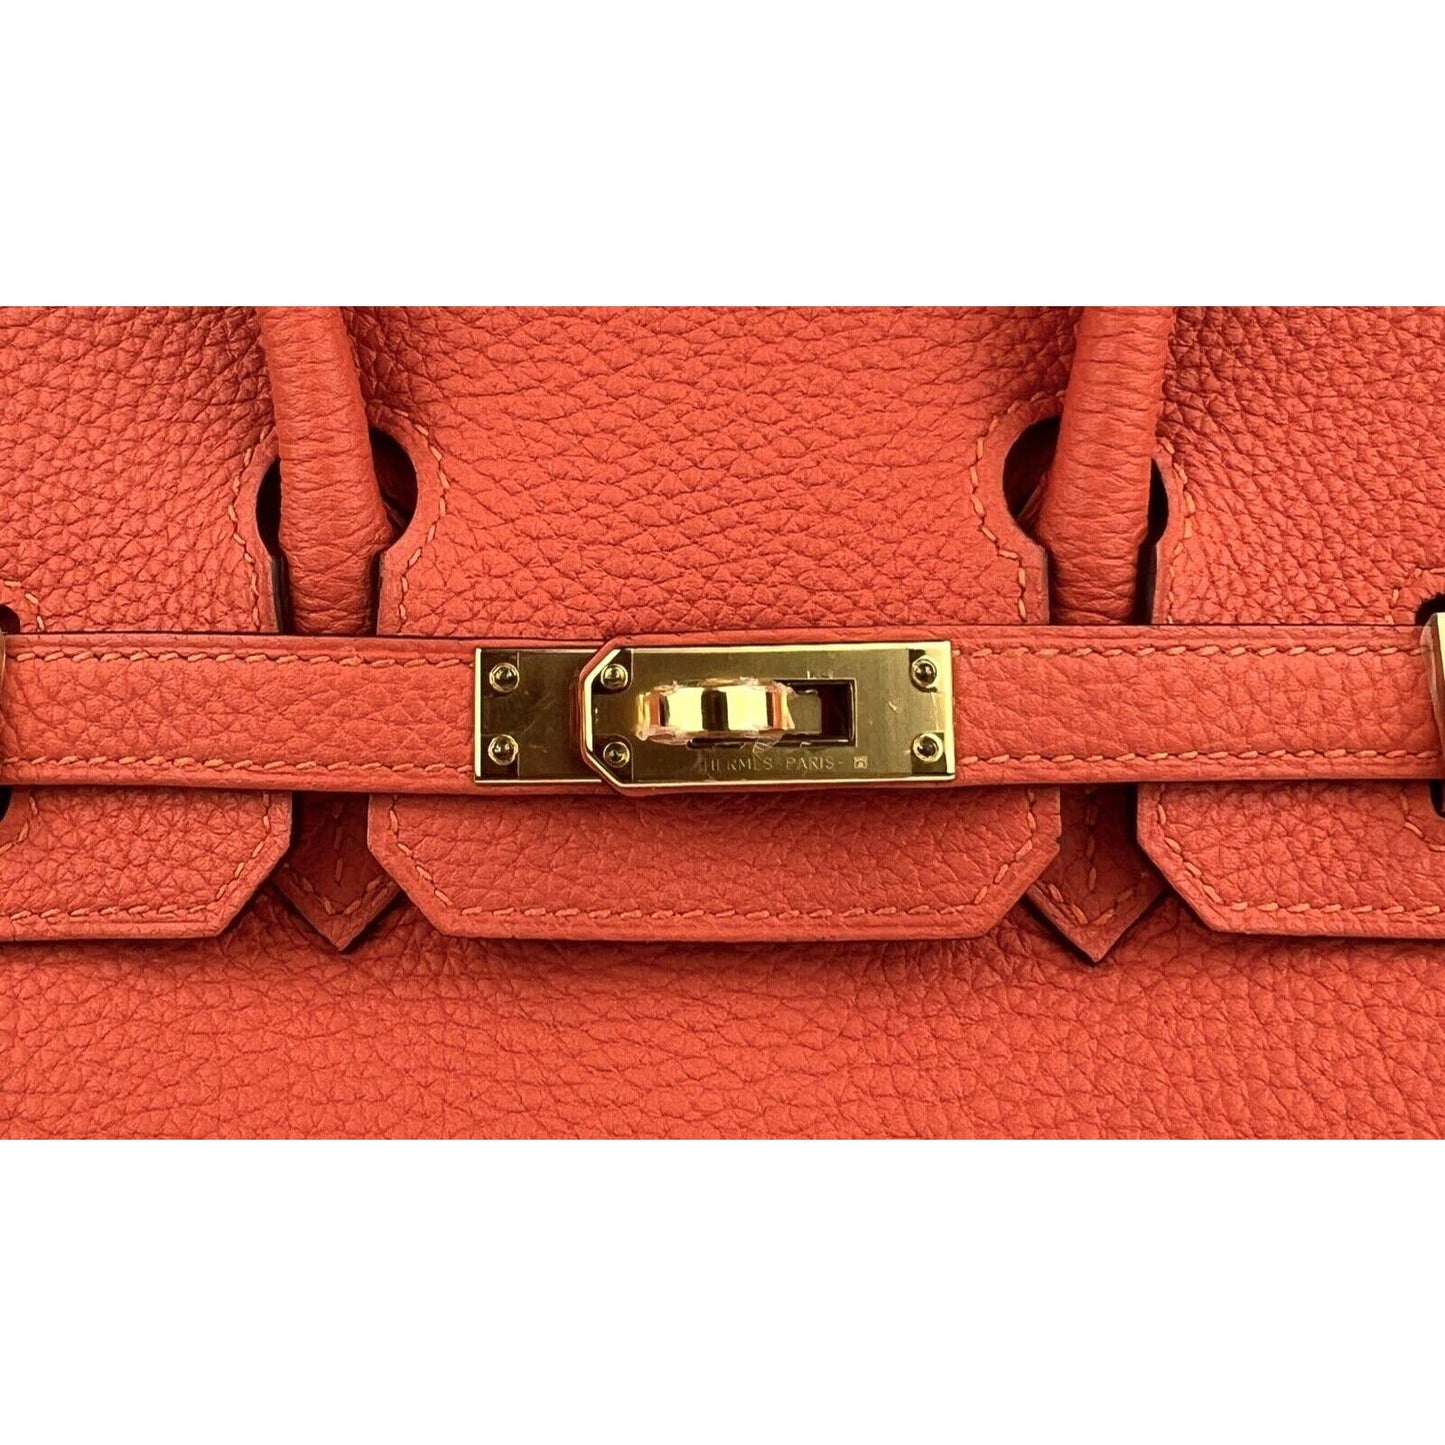 Hermes Birkin 25 Feu Orange Togo Handbag Bag Gold Hardware 2019